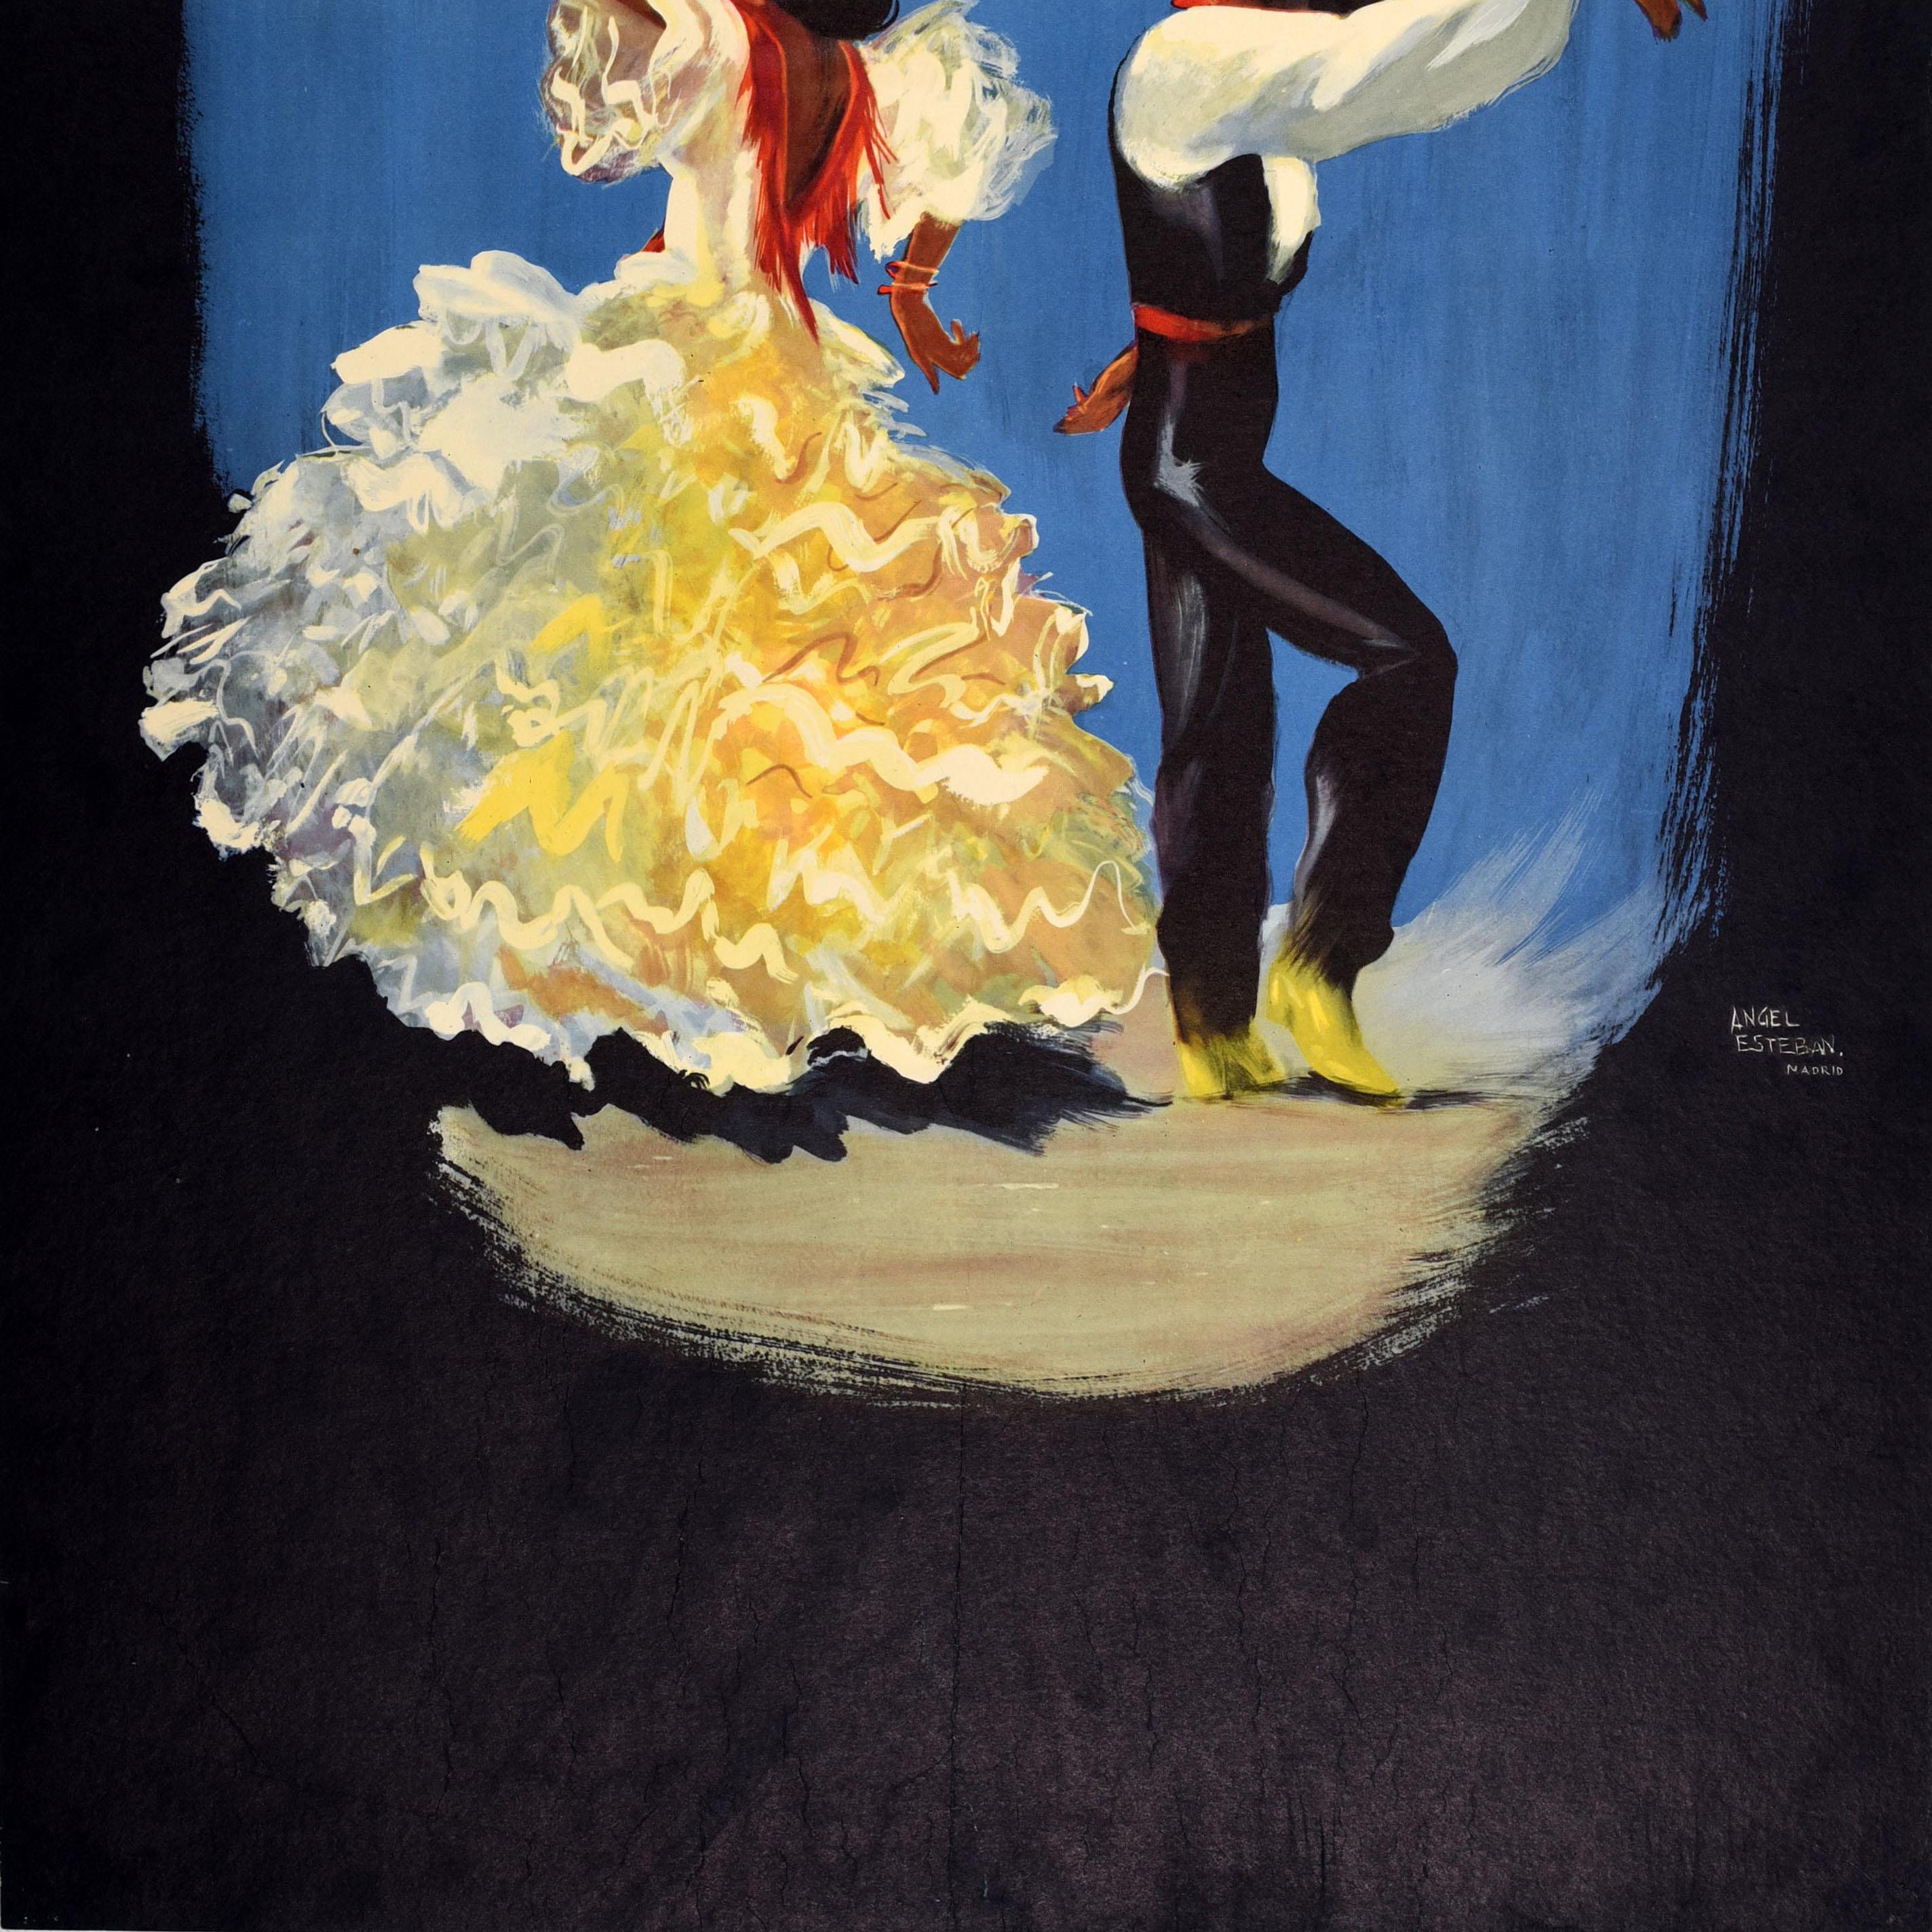 Original-Reiseplakat im Vintage-Stil - Fly Iberia to Spain - mit zwei Flamenco-Tänzern, die Rücken an Rücken in traditioneller Kleidung tanzen, die Dame in einem gelben Rüschenkleid und der Mann in Schwarz mit rotem Bund und Halstuch, darunter ein